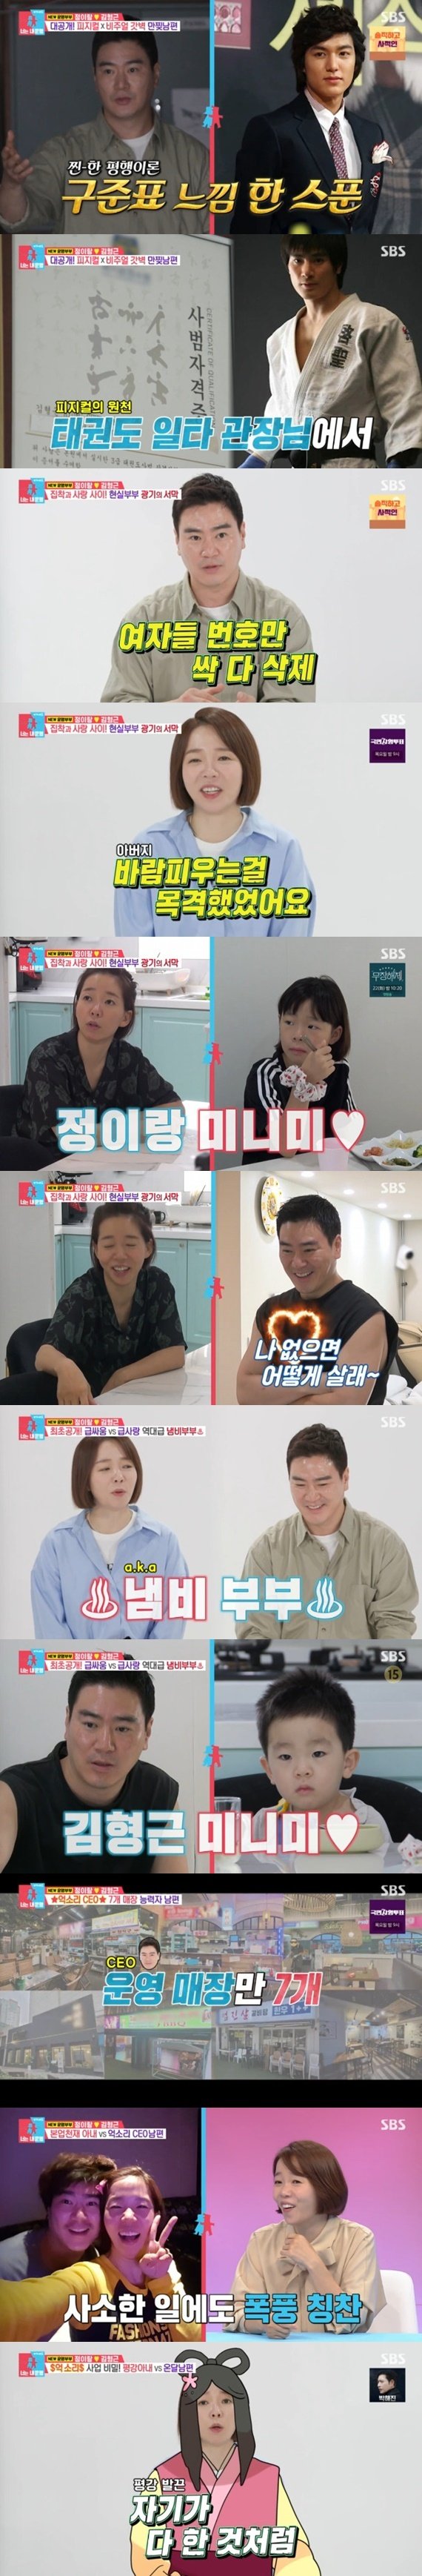 정이랑, 남편 7개 식당 CEO로 만든 비화 공개…'동상이몽2' 합류 [RE:TV]